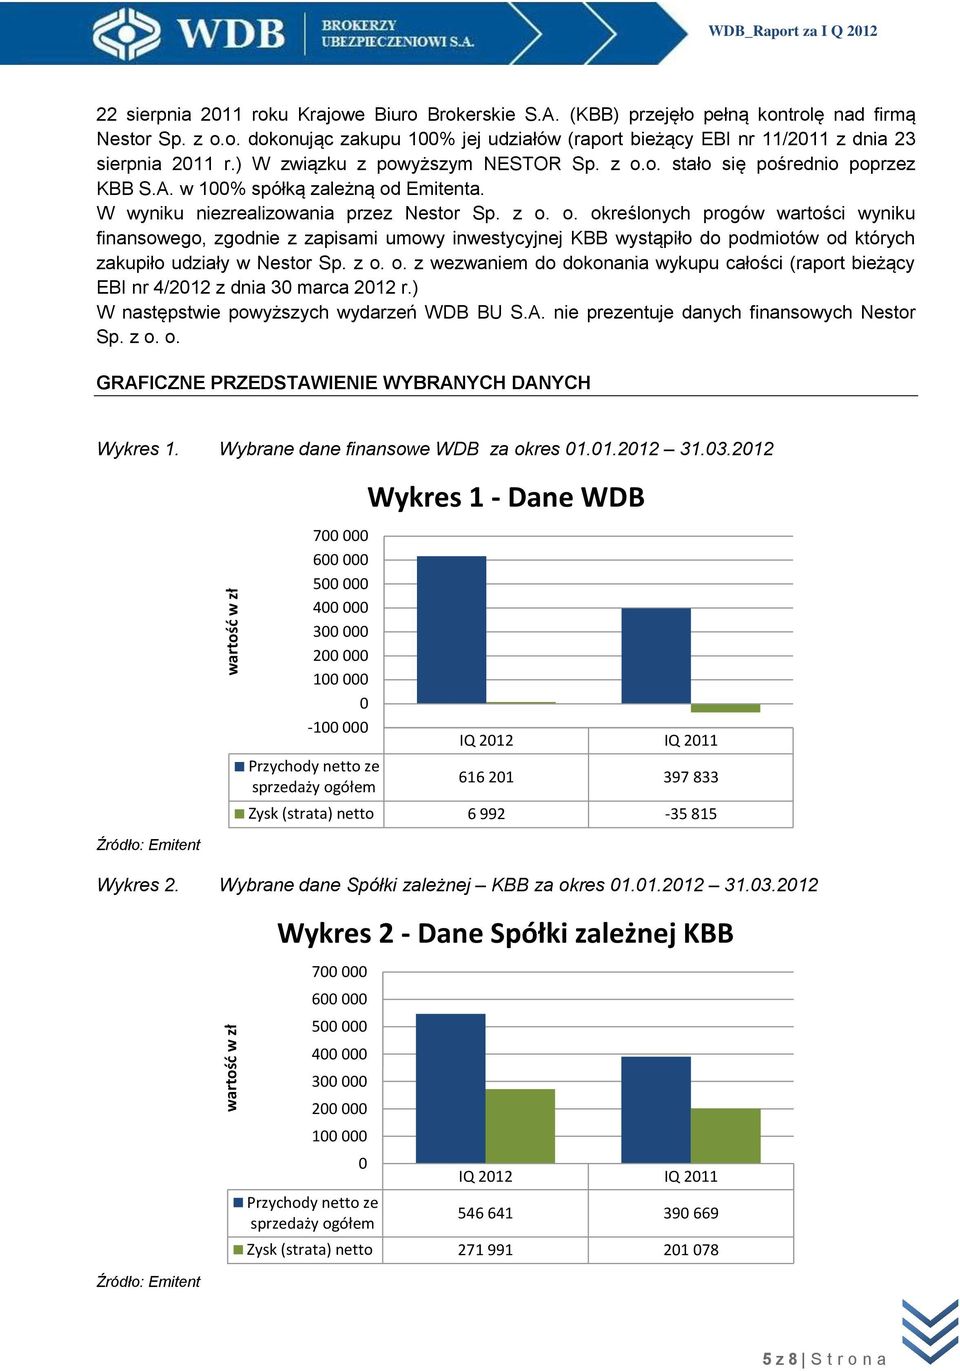 z o. o. z wezwaniem do dokonania wykupu całości (raport bieżący EBI nr 4/2012 z dnia 30 marca 2012 r.) W następstwie powyższych wydarzeń WDB BU S.A. nie prezentuje danych finansowych Nestor Sp. z o.